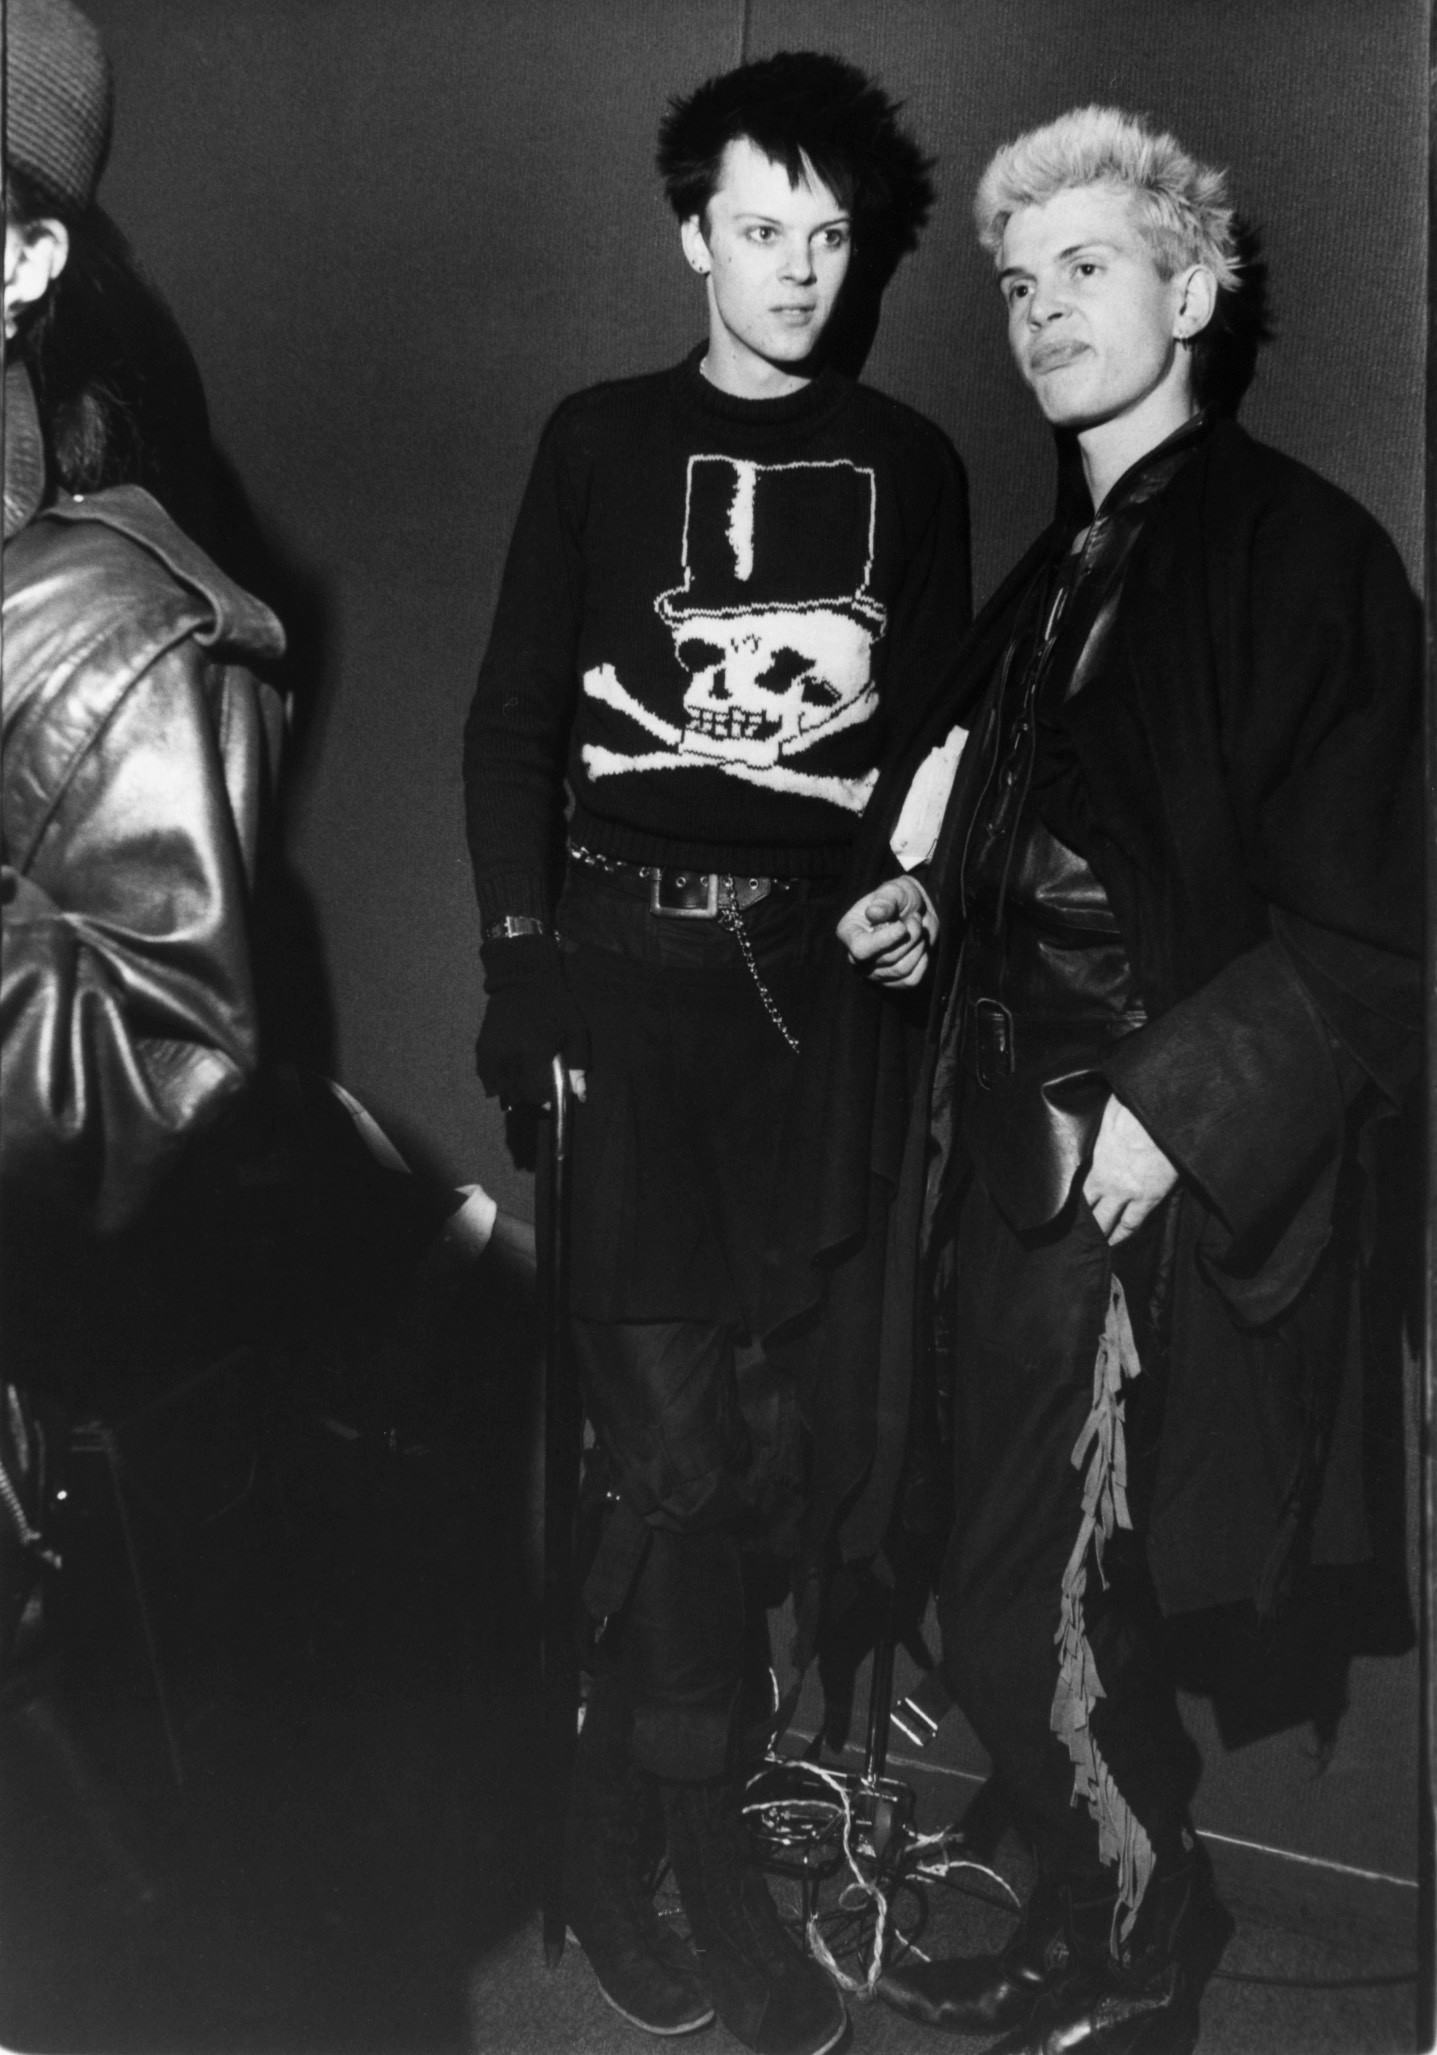 Билли Айдол, 1980-е. Фотограф Билл Каннингем